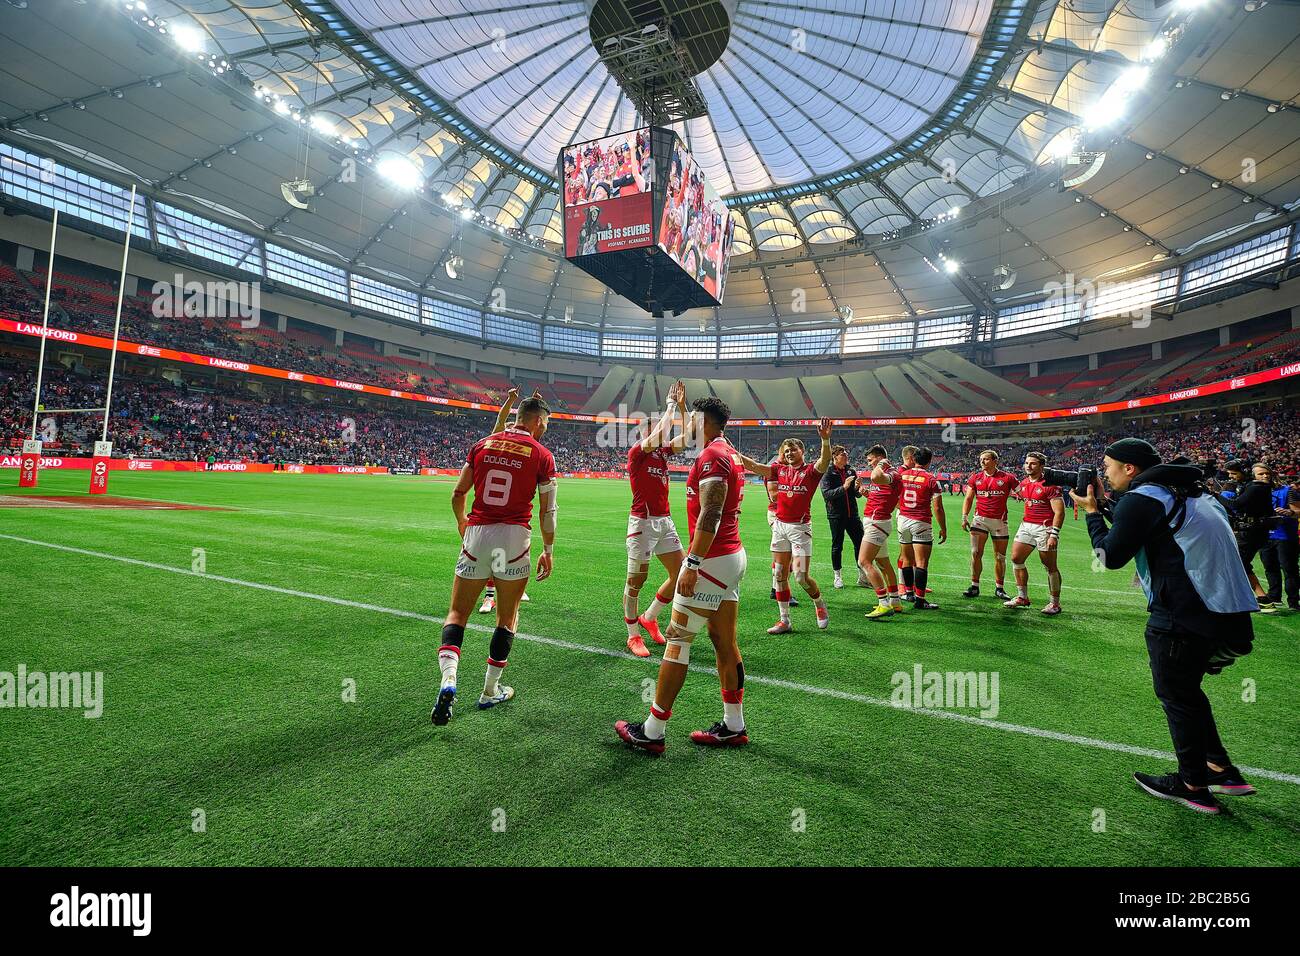 Vancouver, Canadá. 8 de marzo de 2020. Canadá celebra después de derrotar a Sudáfrica para ganar bronce durante el día 2 - 2020 HSBC World Rugby Sevens Series en Foto de stock